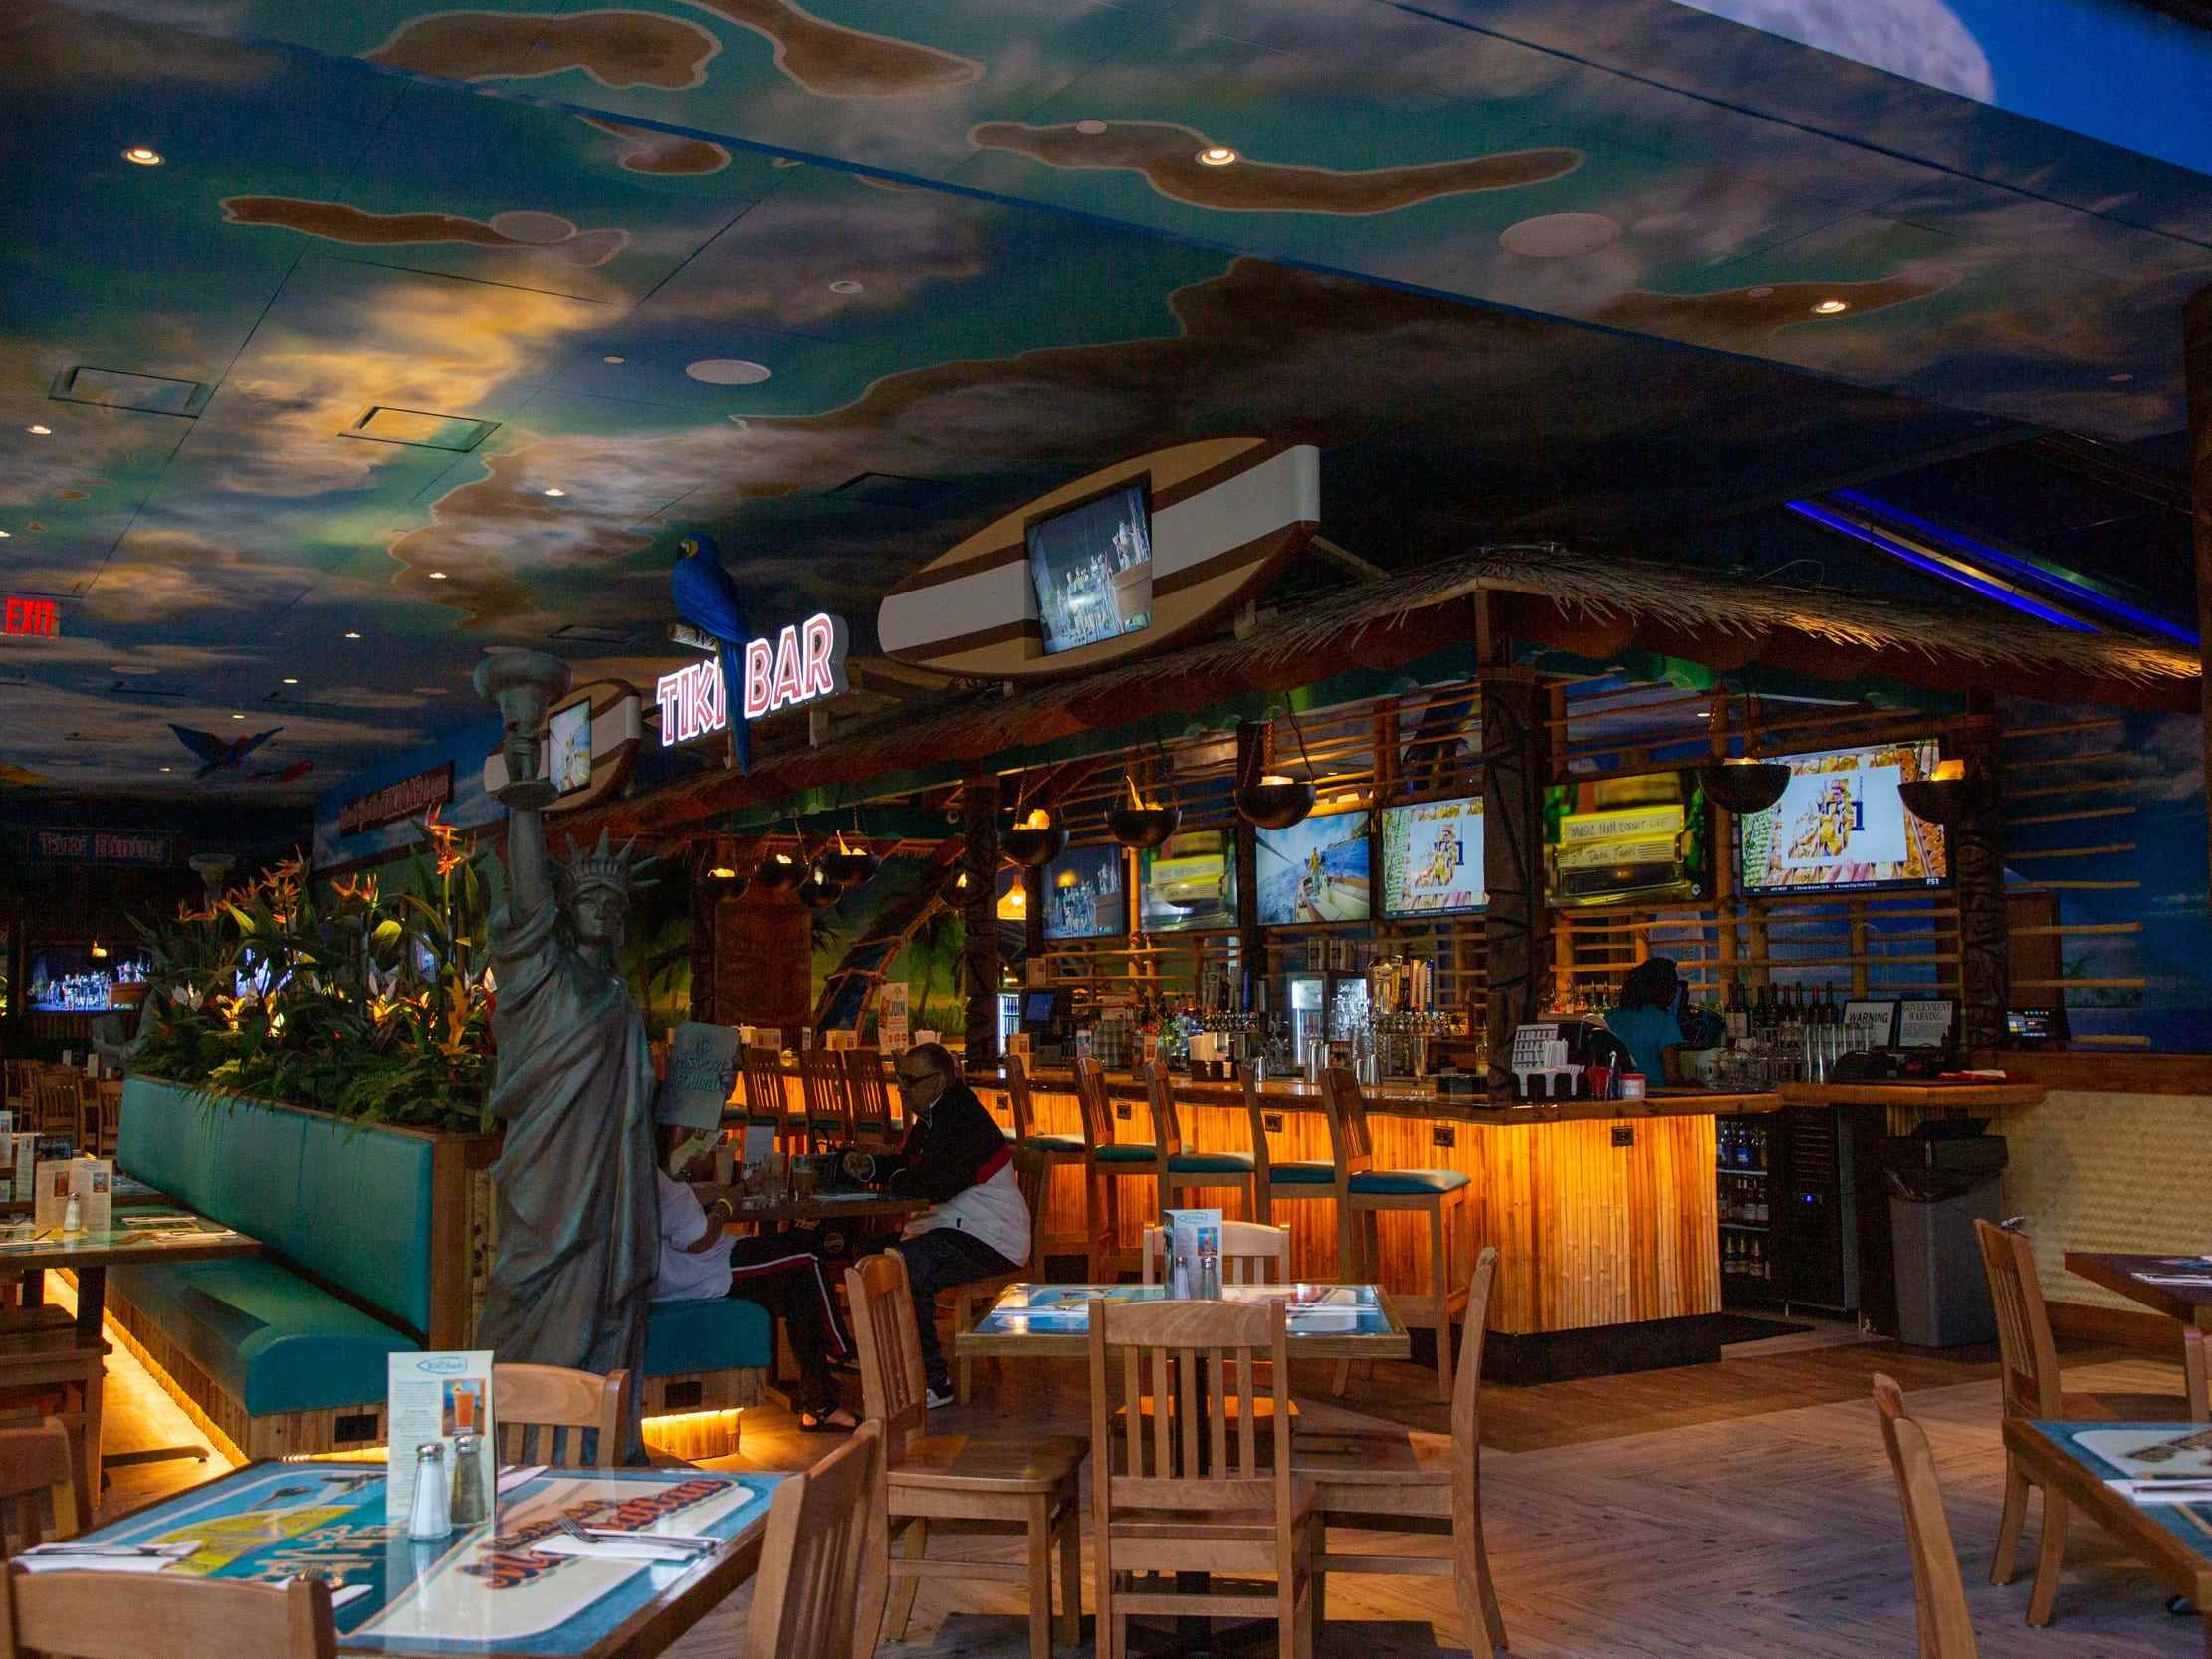 das zweistöckige Margaritaville Restaurant und seine Bar im ersten Stock